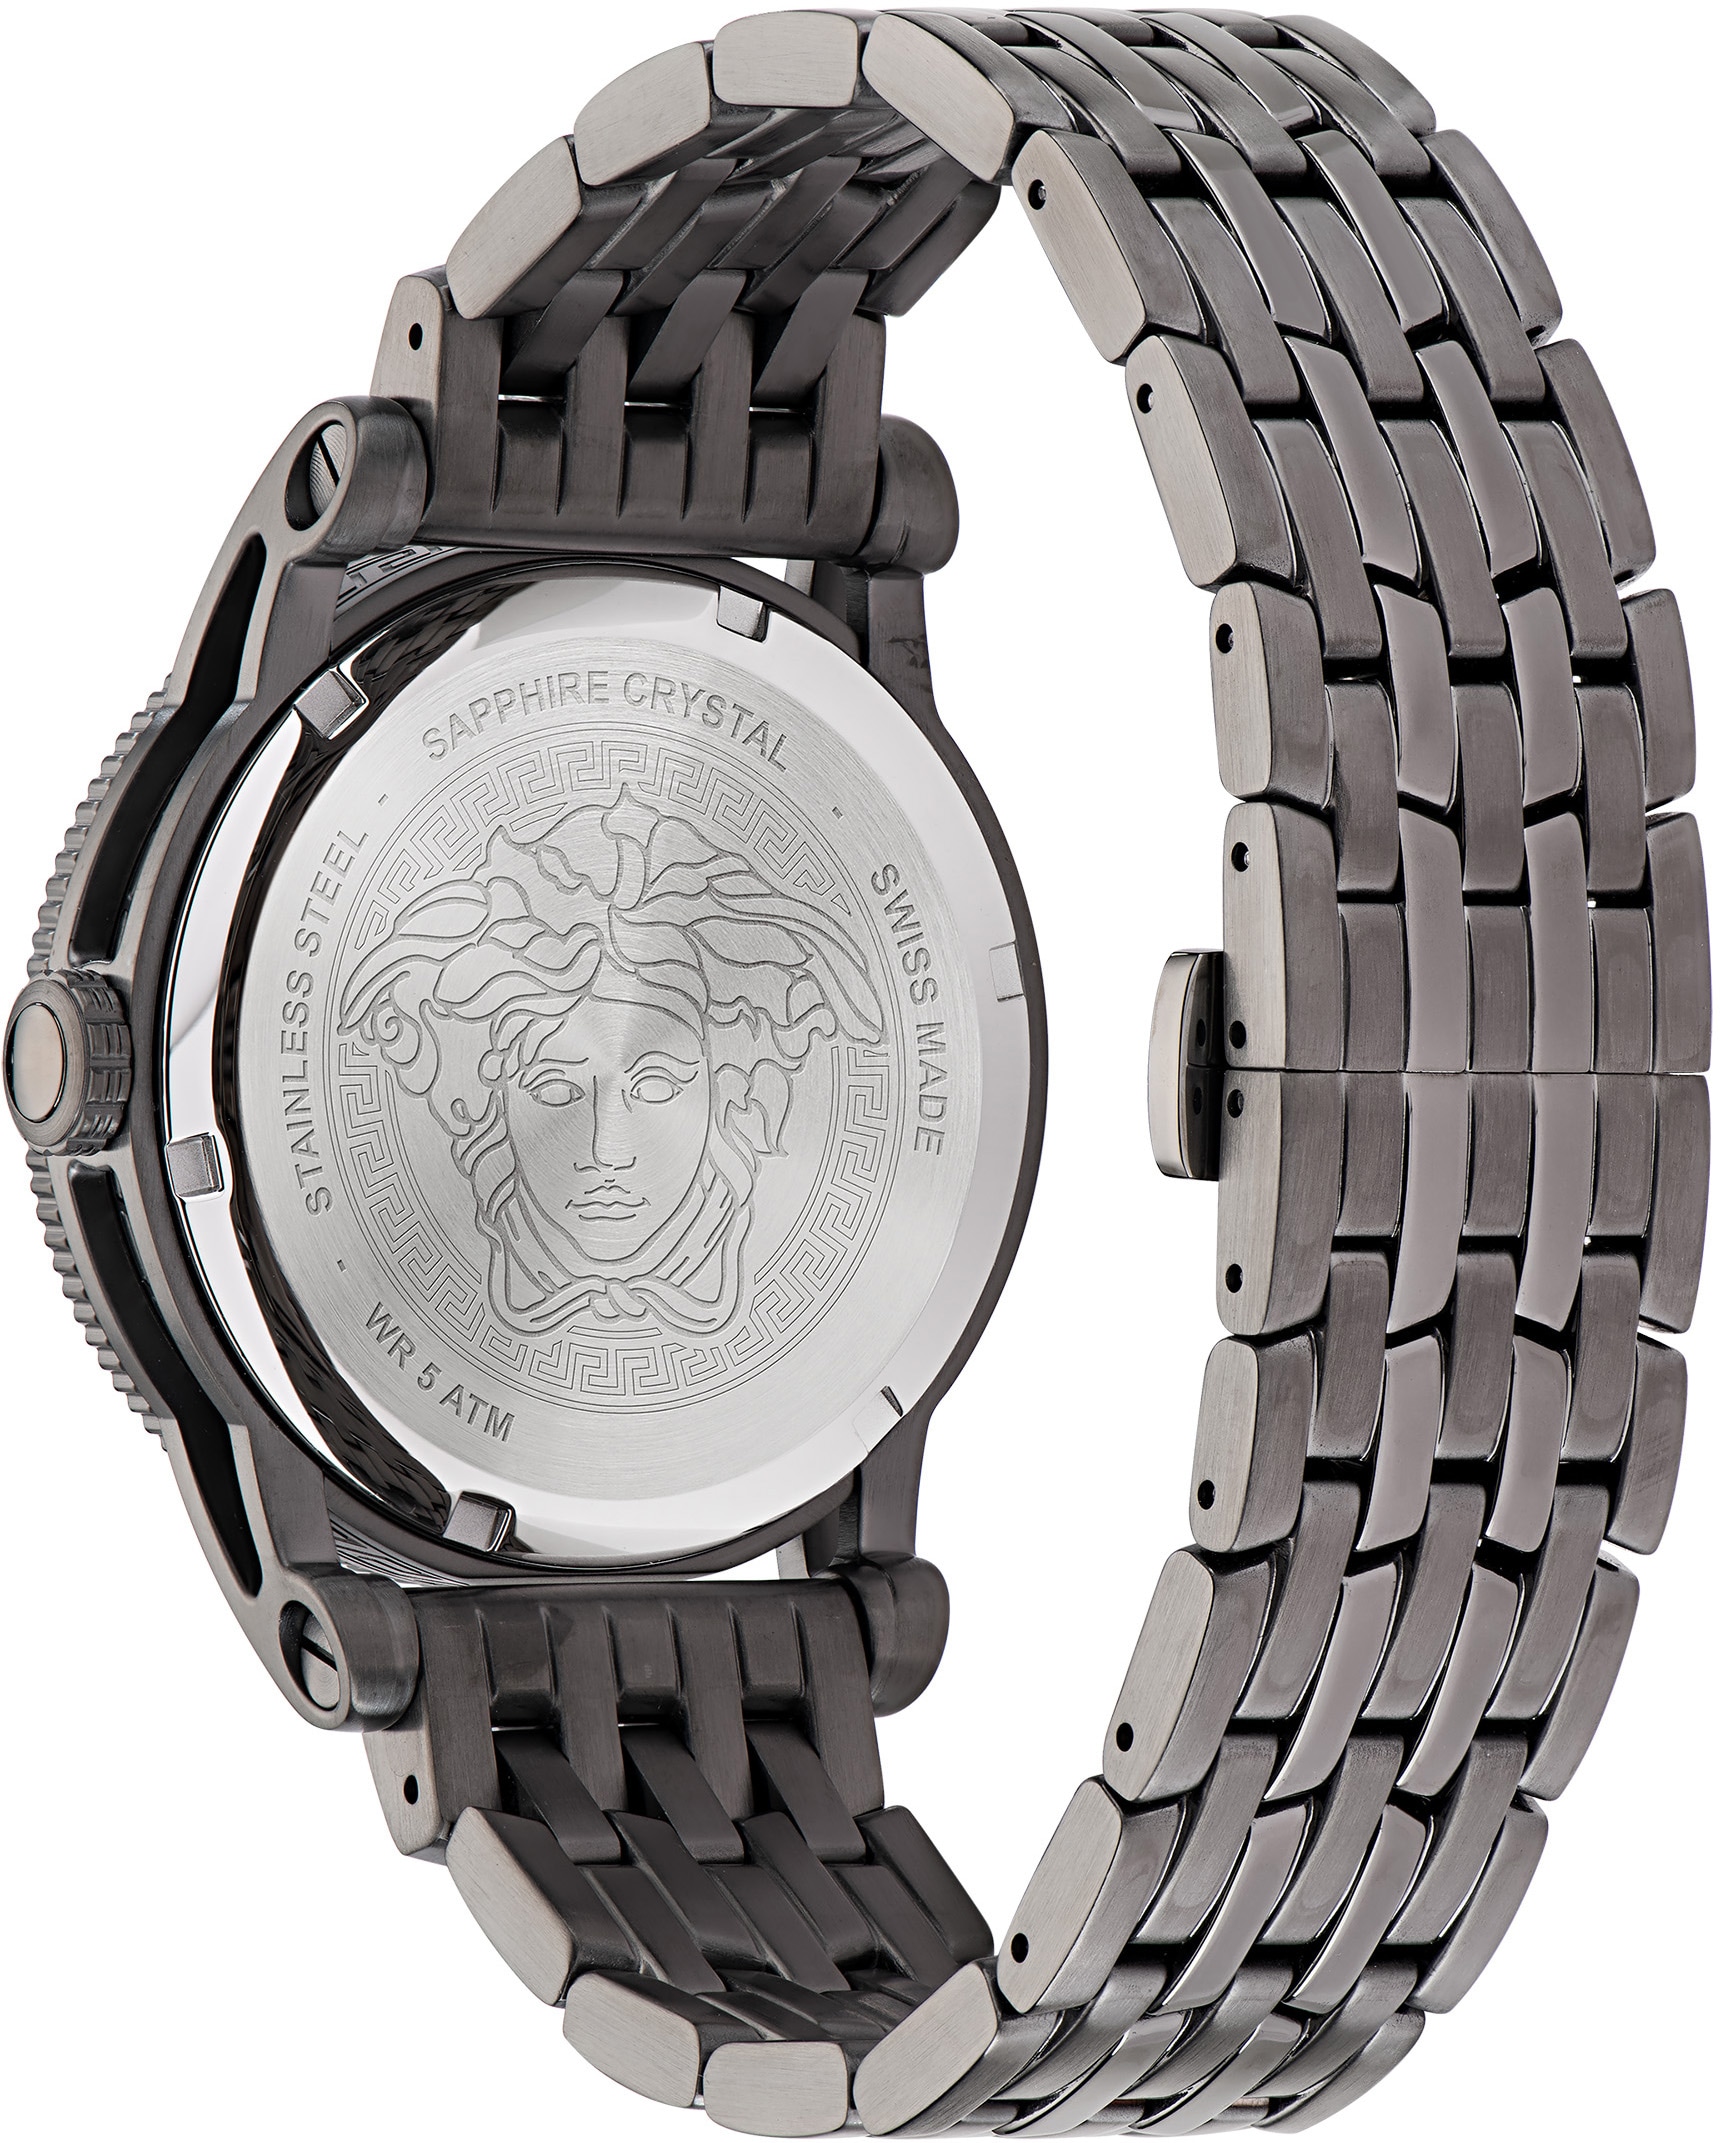 Versace Schweizer Uhr »V-PALAZZO, VE2V00522« online kaufen bei OTTO